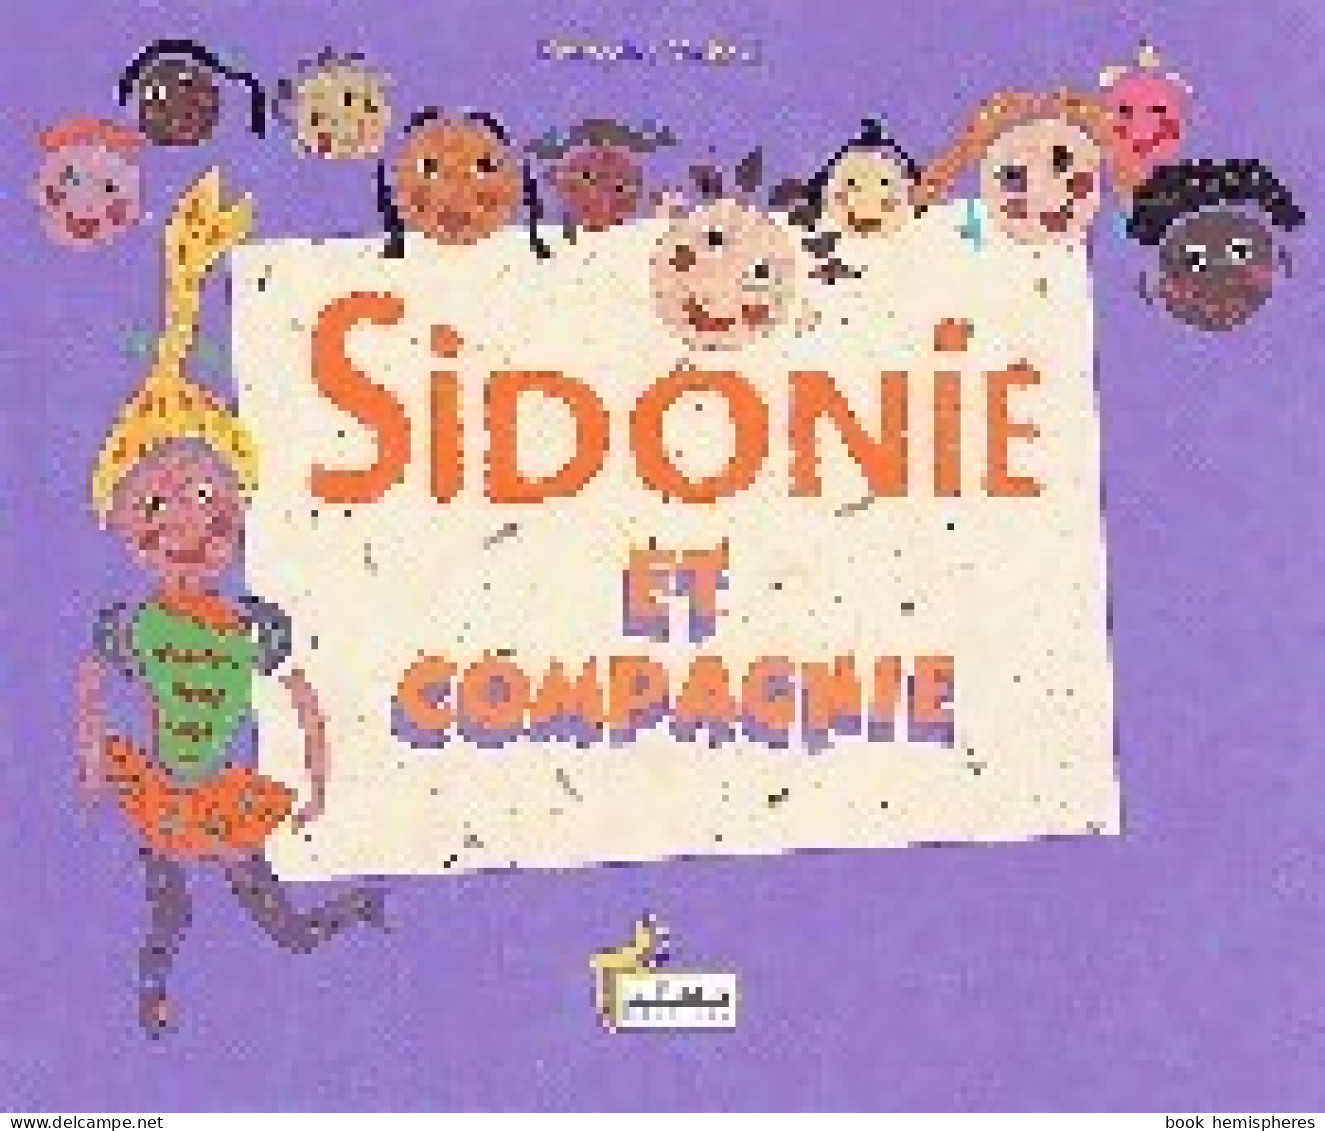 Sidonie Et Compagnie (2001) De Françoise Malaval - Other & Unclassified